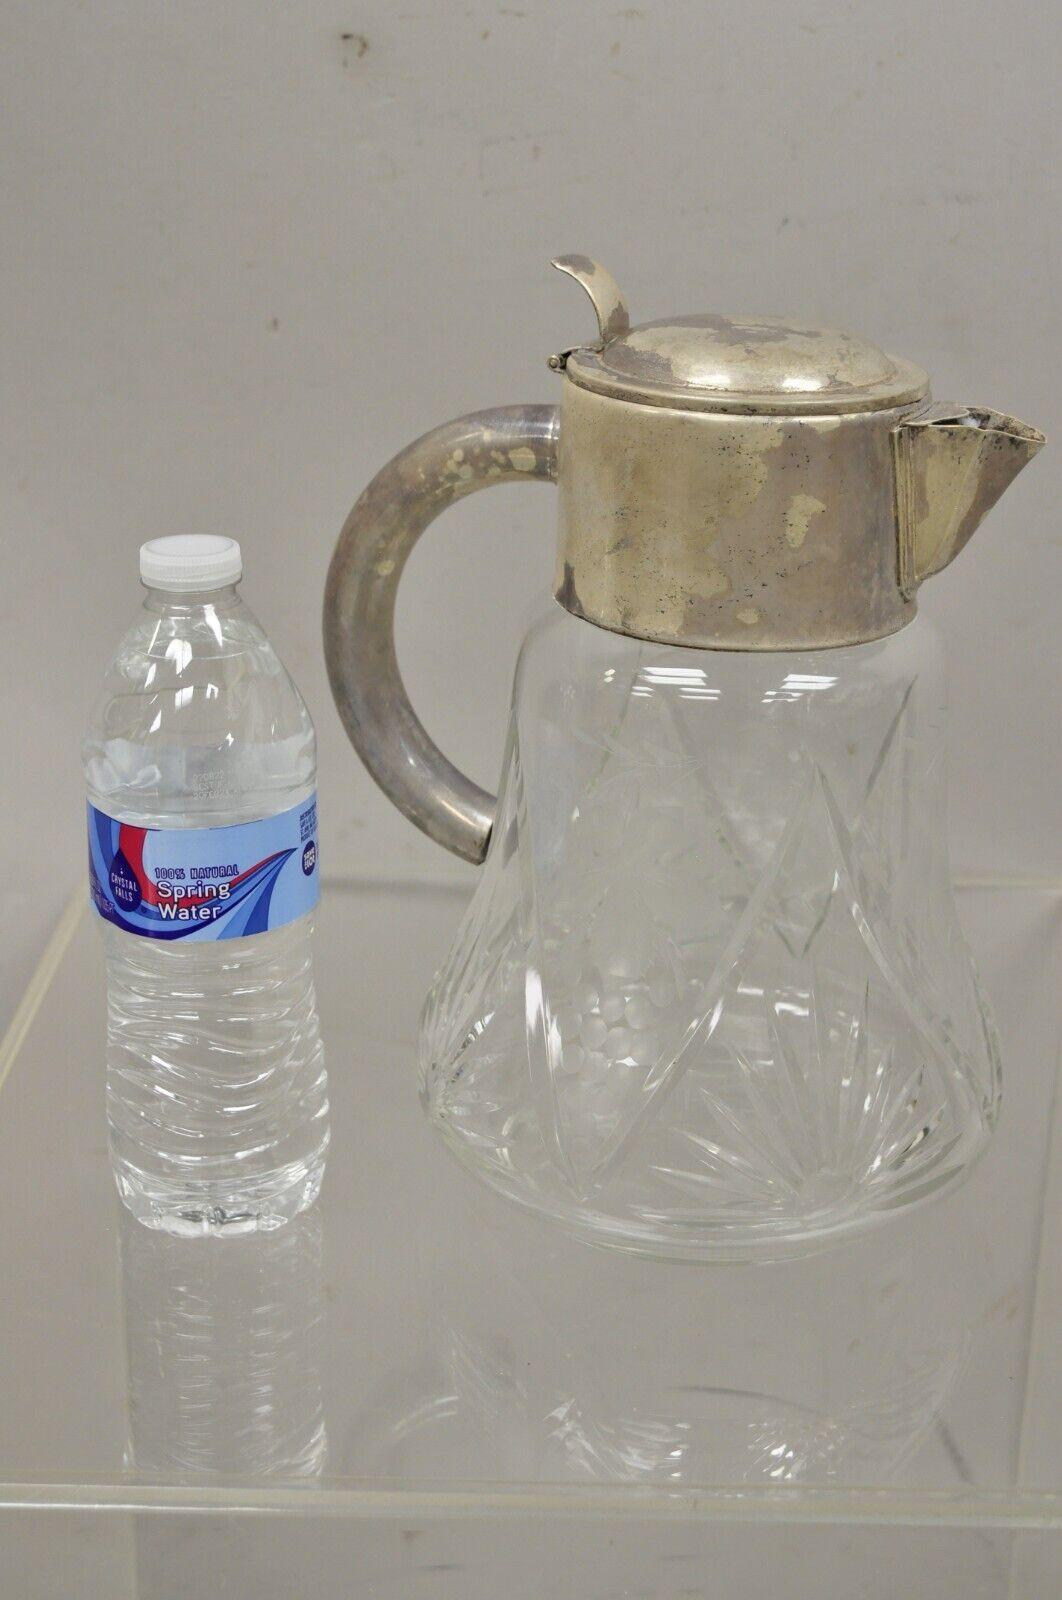 Antique pichet à eau pour limonade en cristal taillé, plaqué argent, de style victorien. Au début des années 1900. Mesures : 11